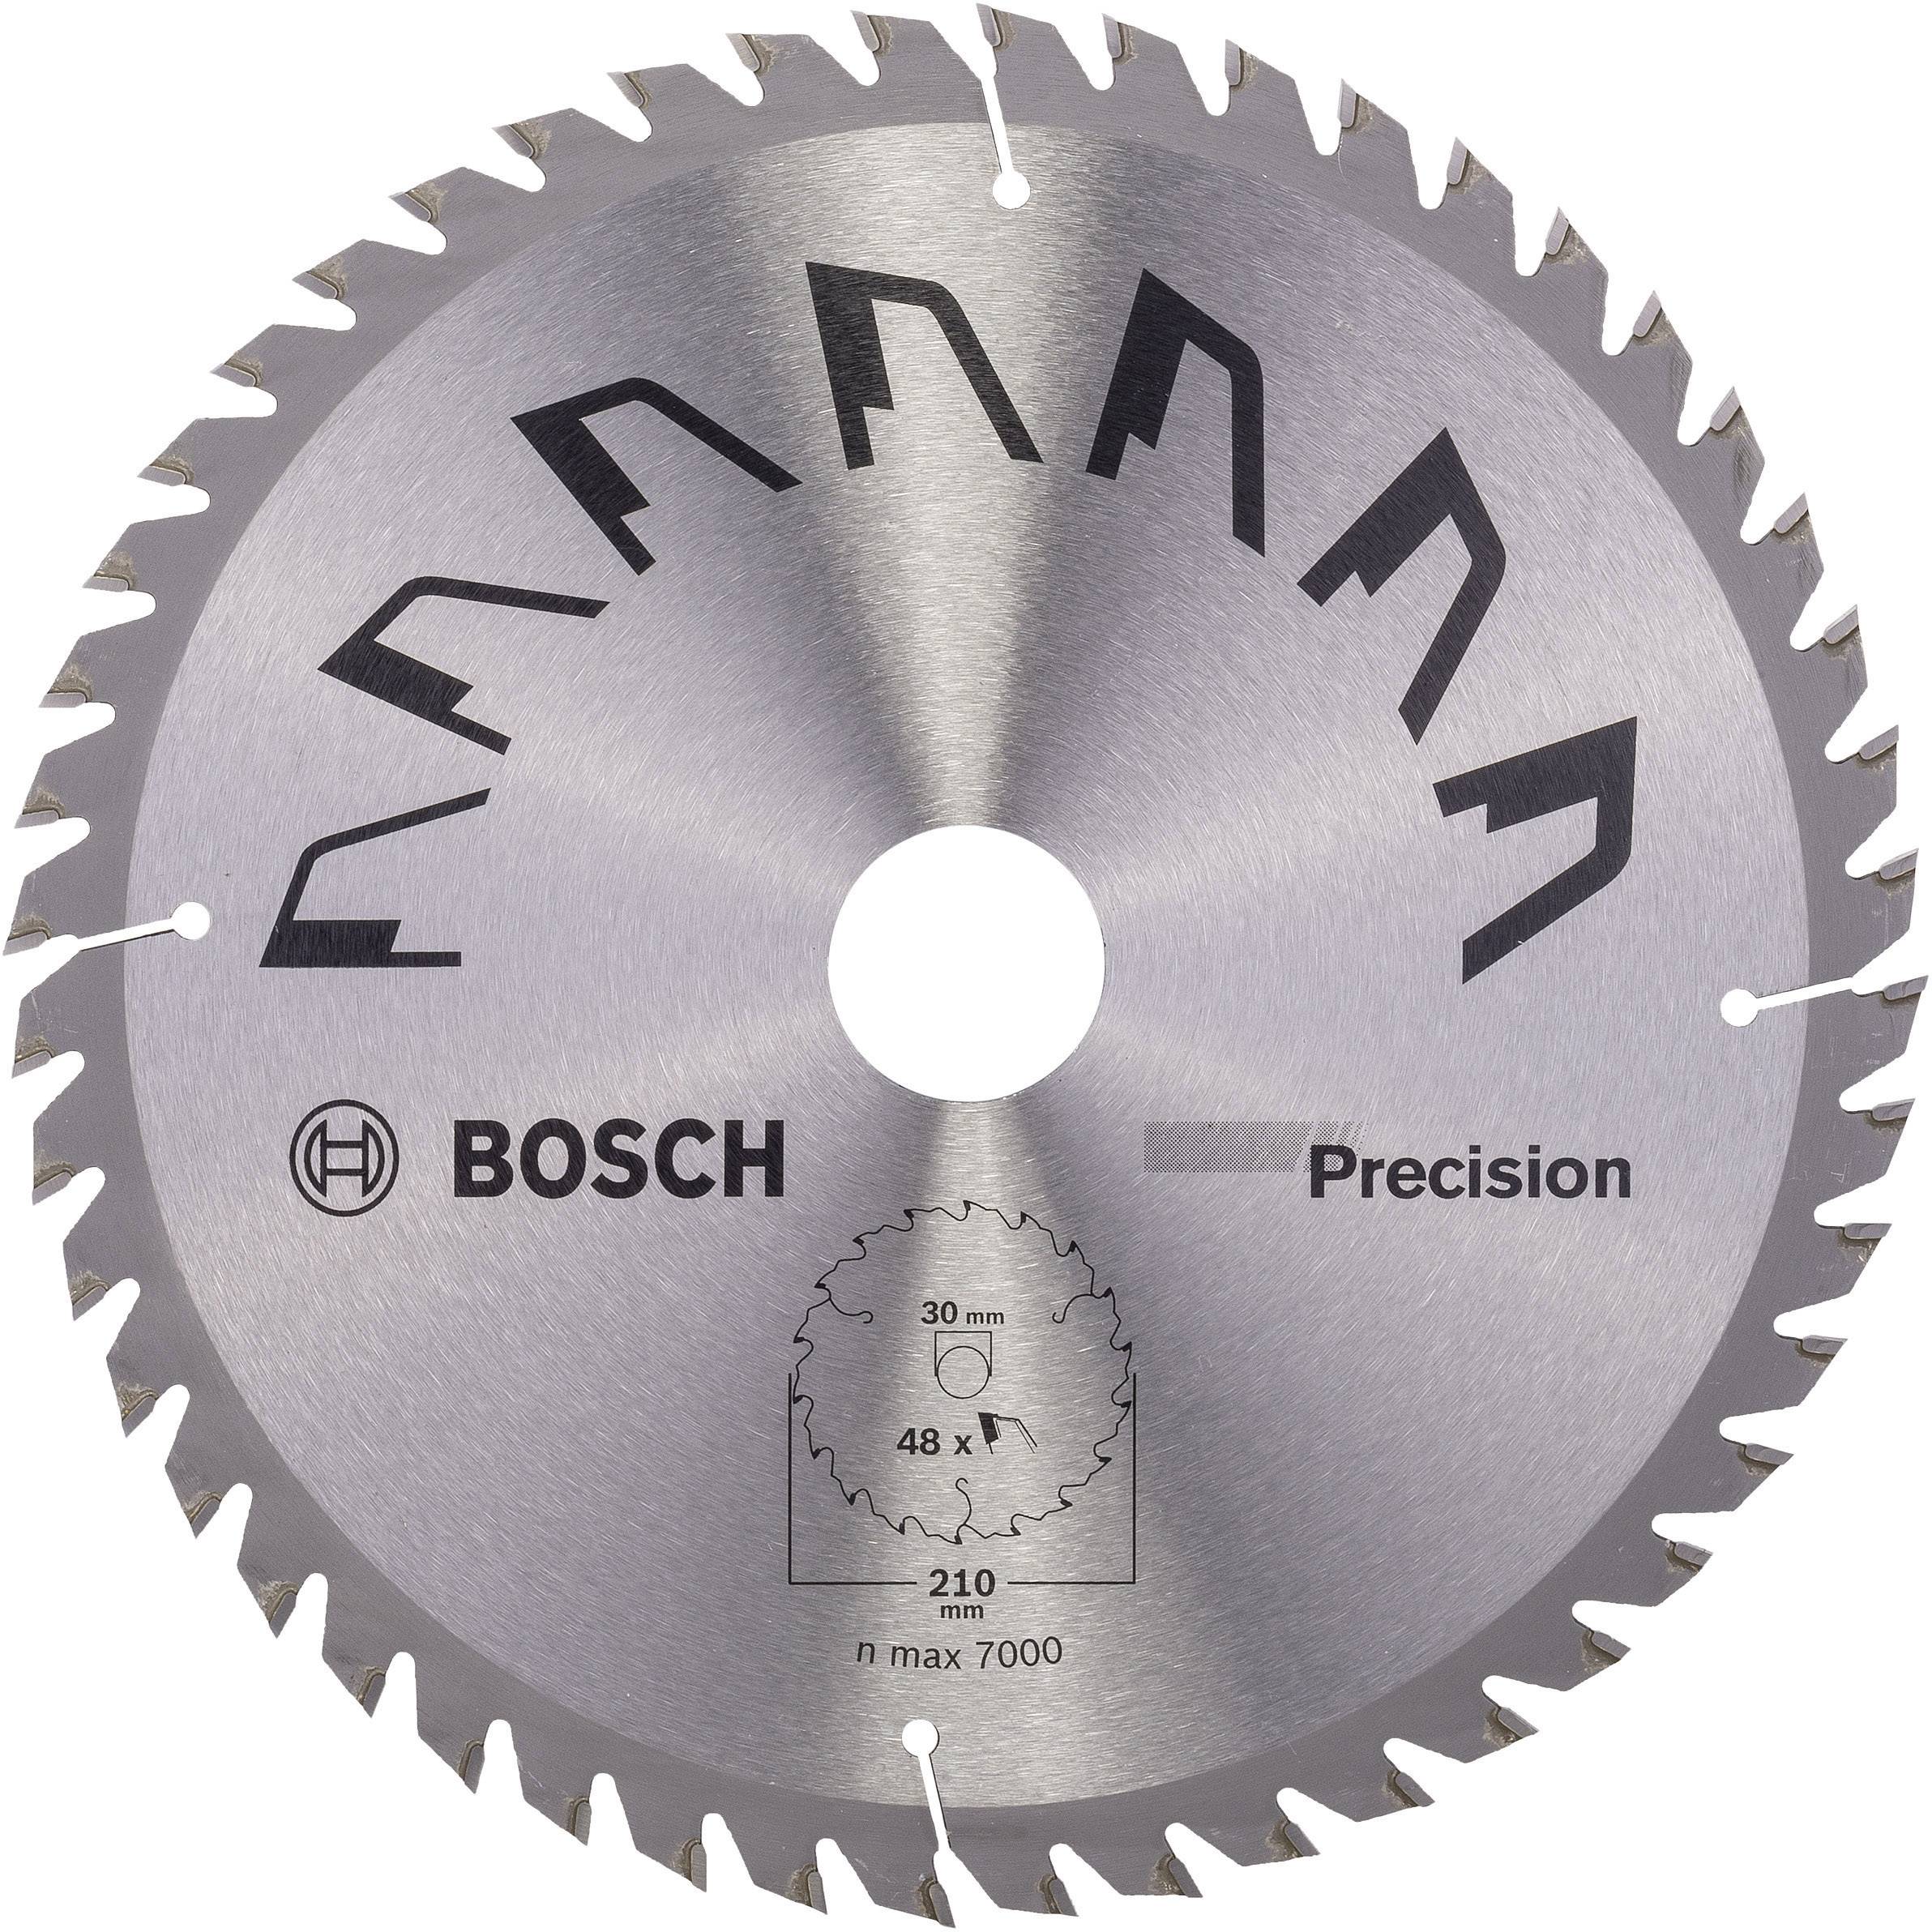 BOSCH Hartmetall Kreissägeblatt 210 x 30 mm Zähneanzahl: 48 Bosch Accessories Precision 2609256B58